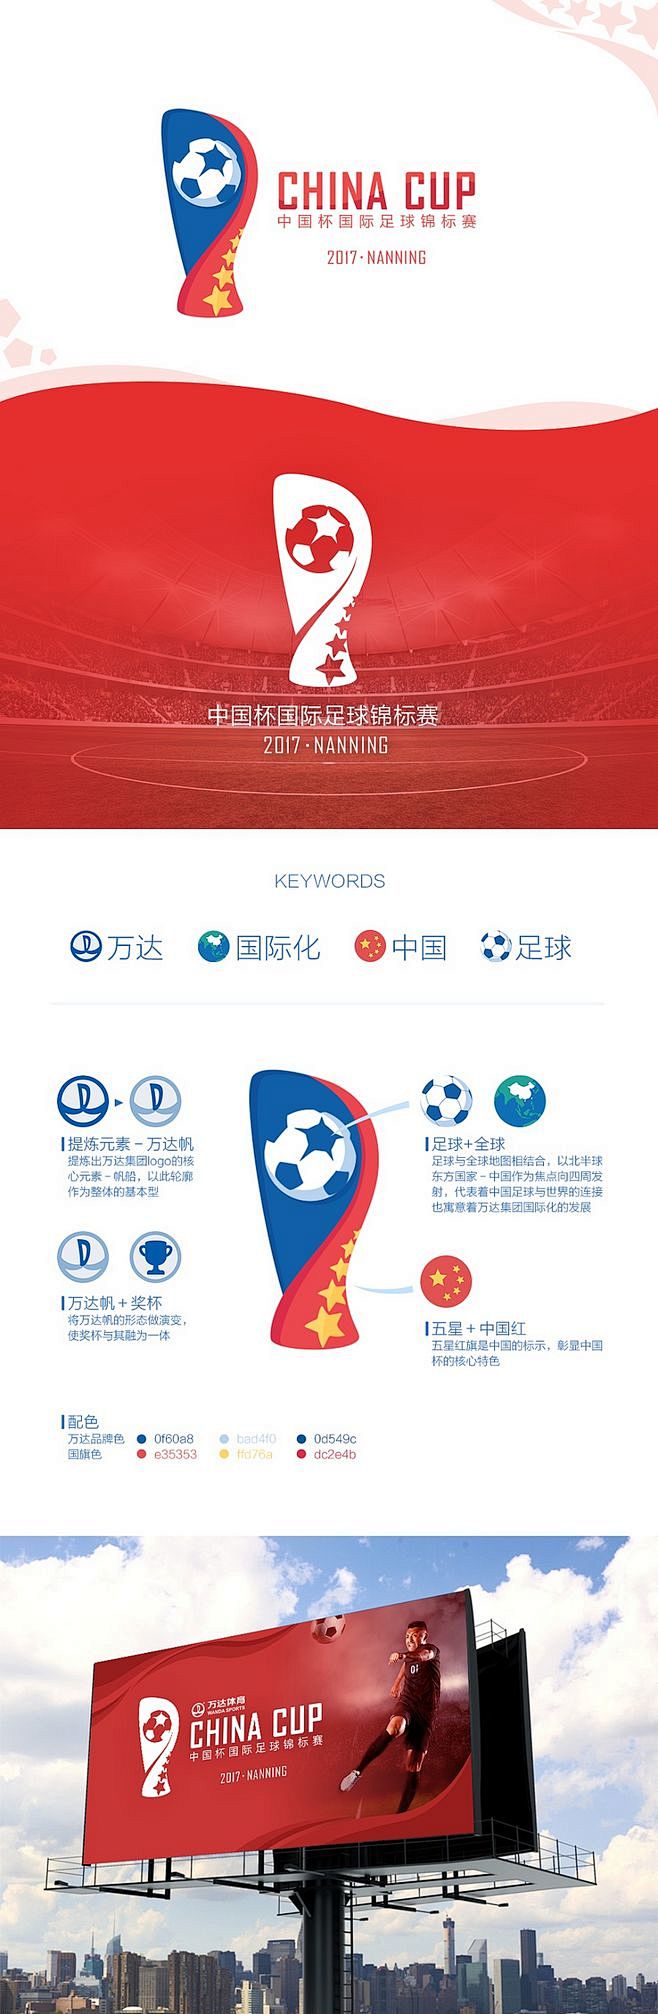 世界杯足球赛logo设计